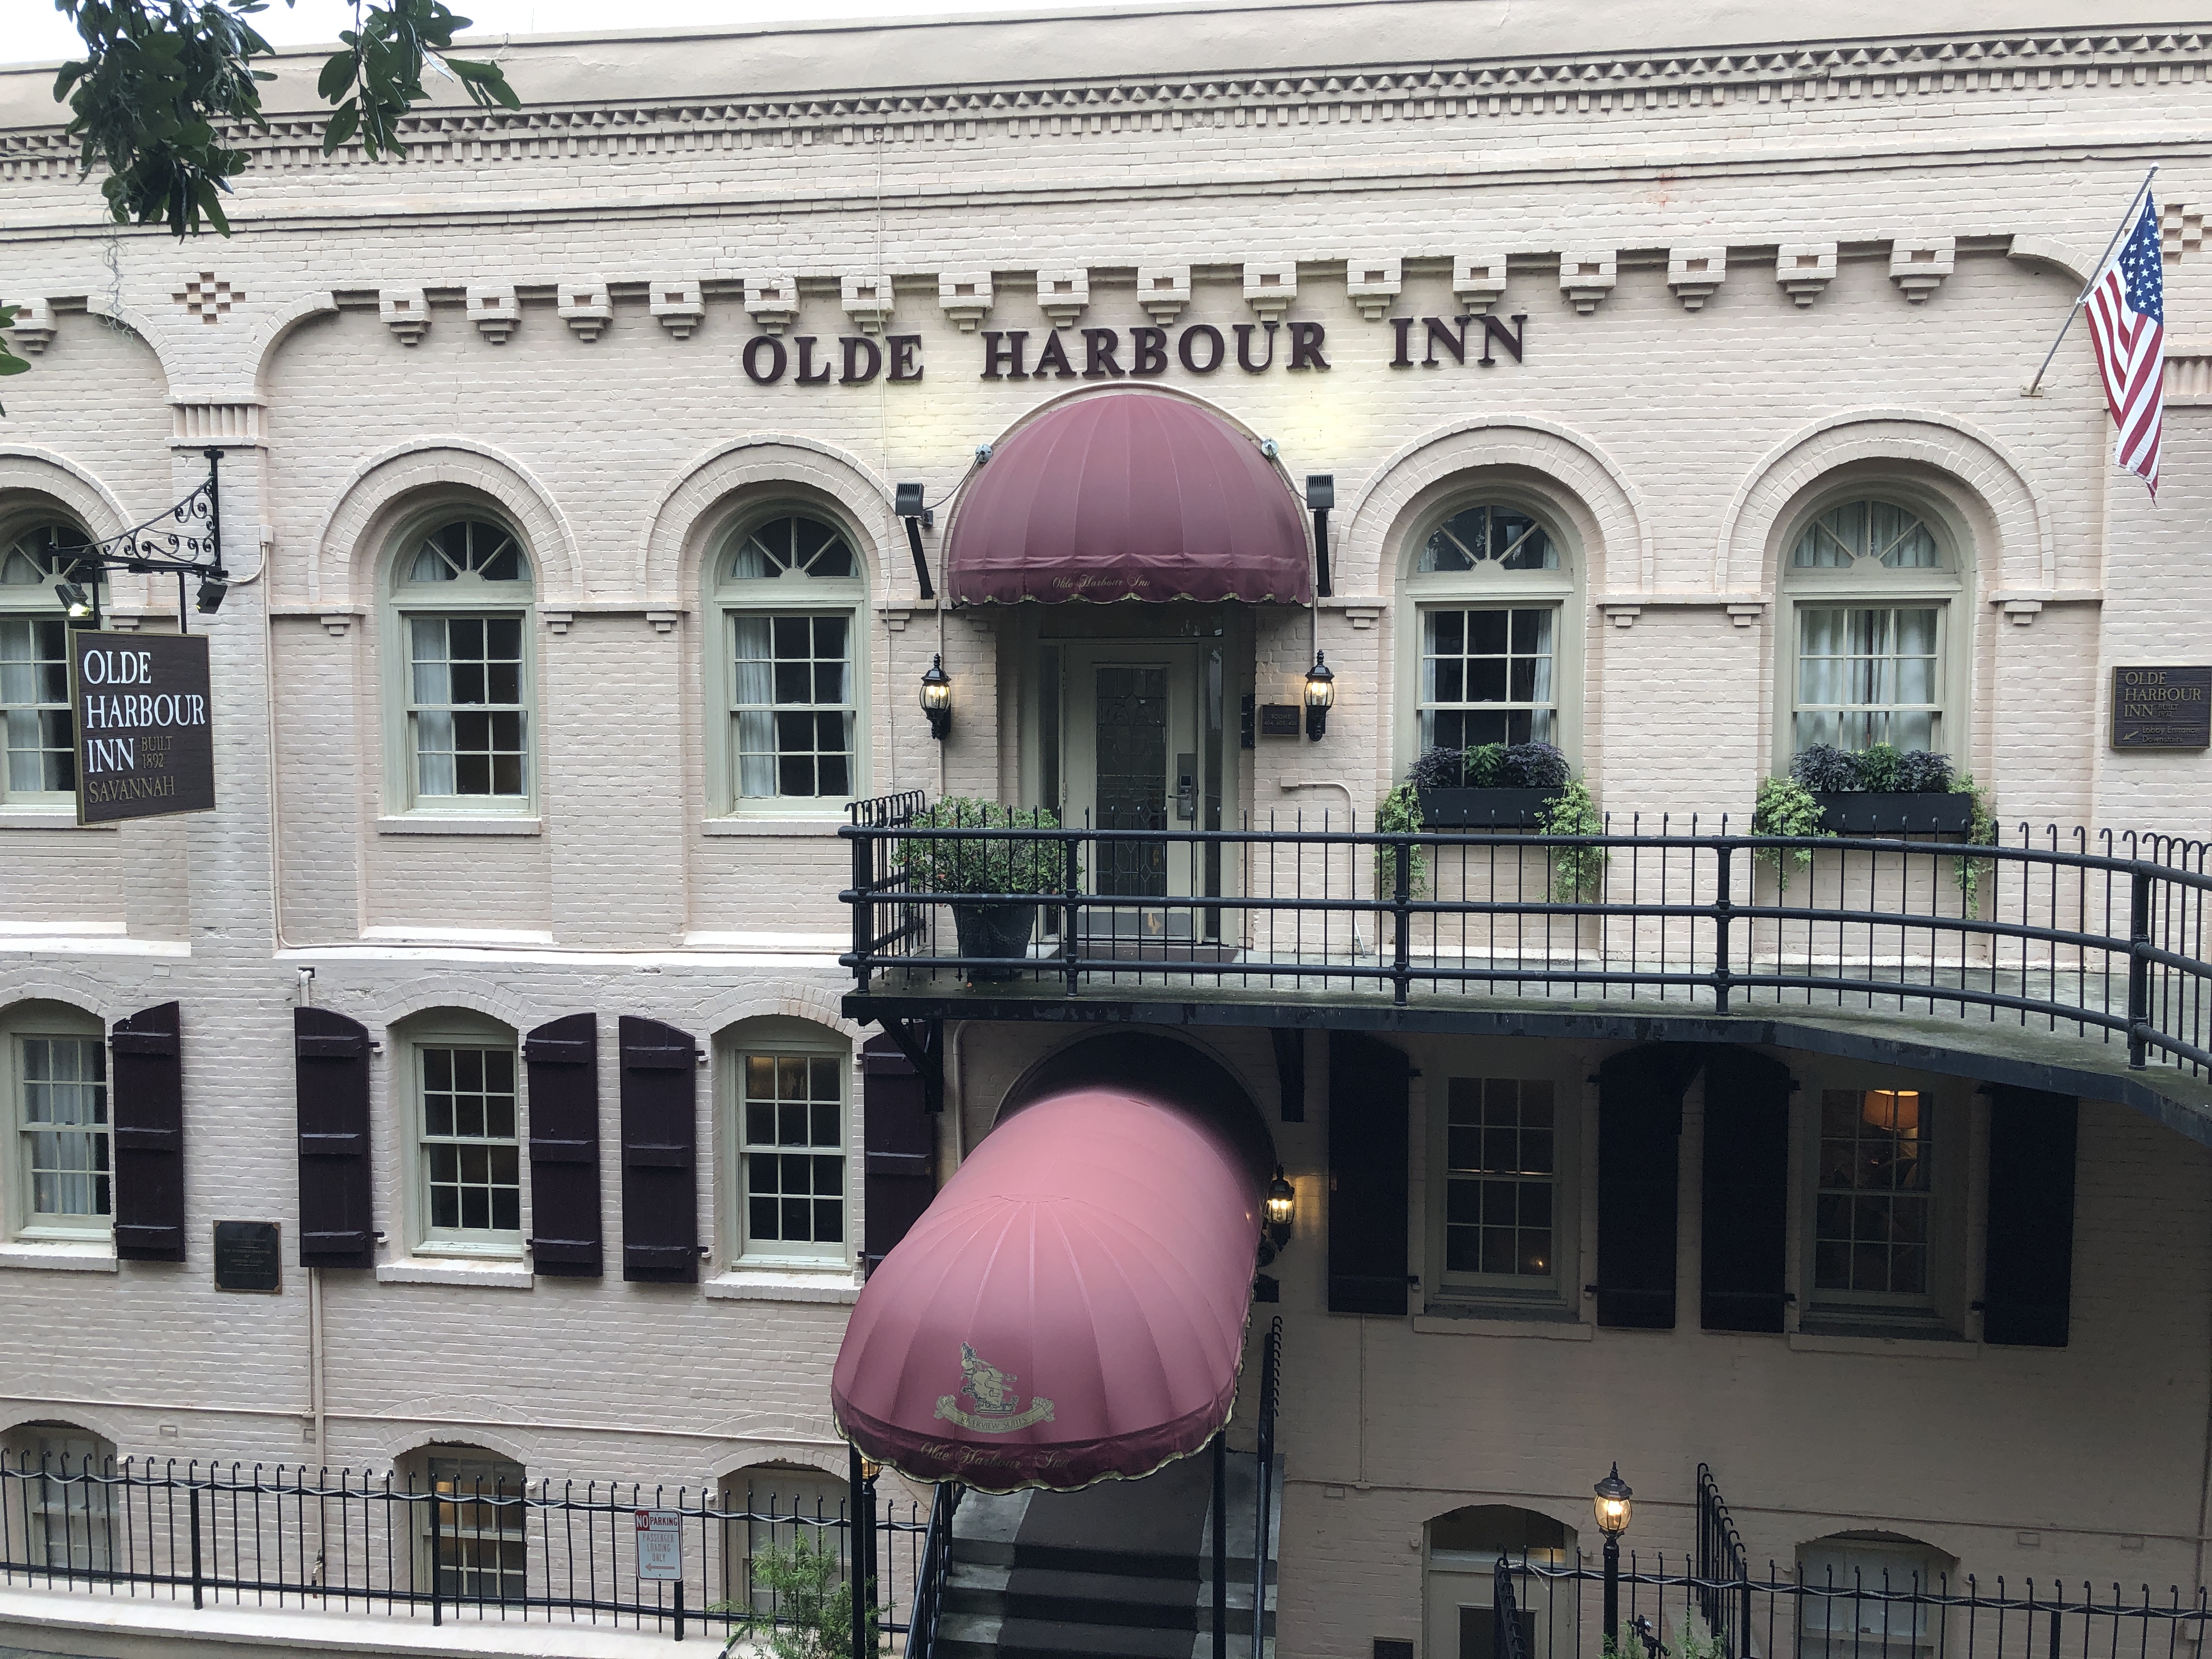 Olde Harbour Inn - #1 Ghost Tour